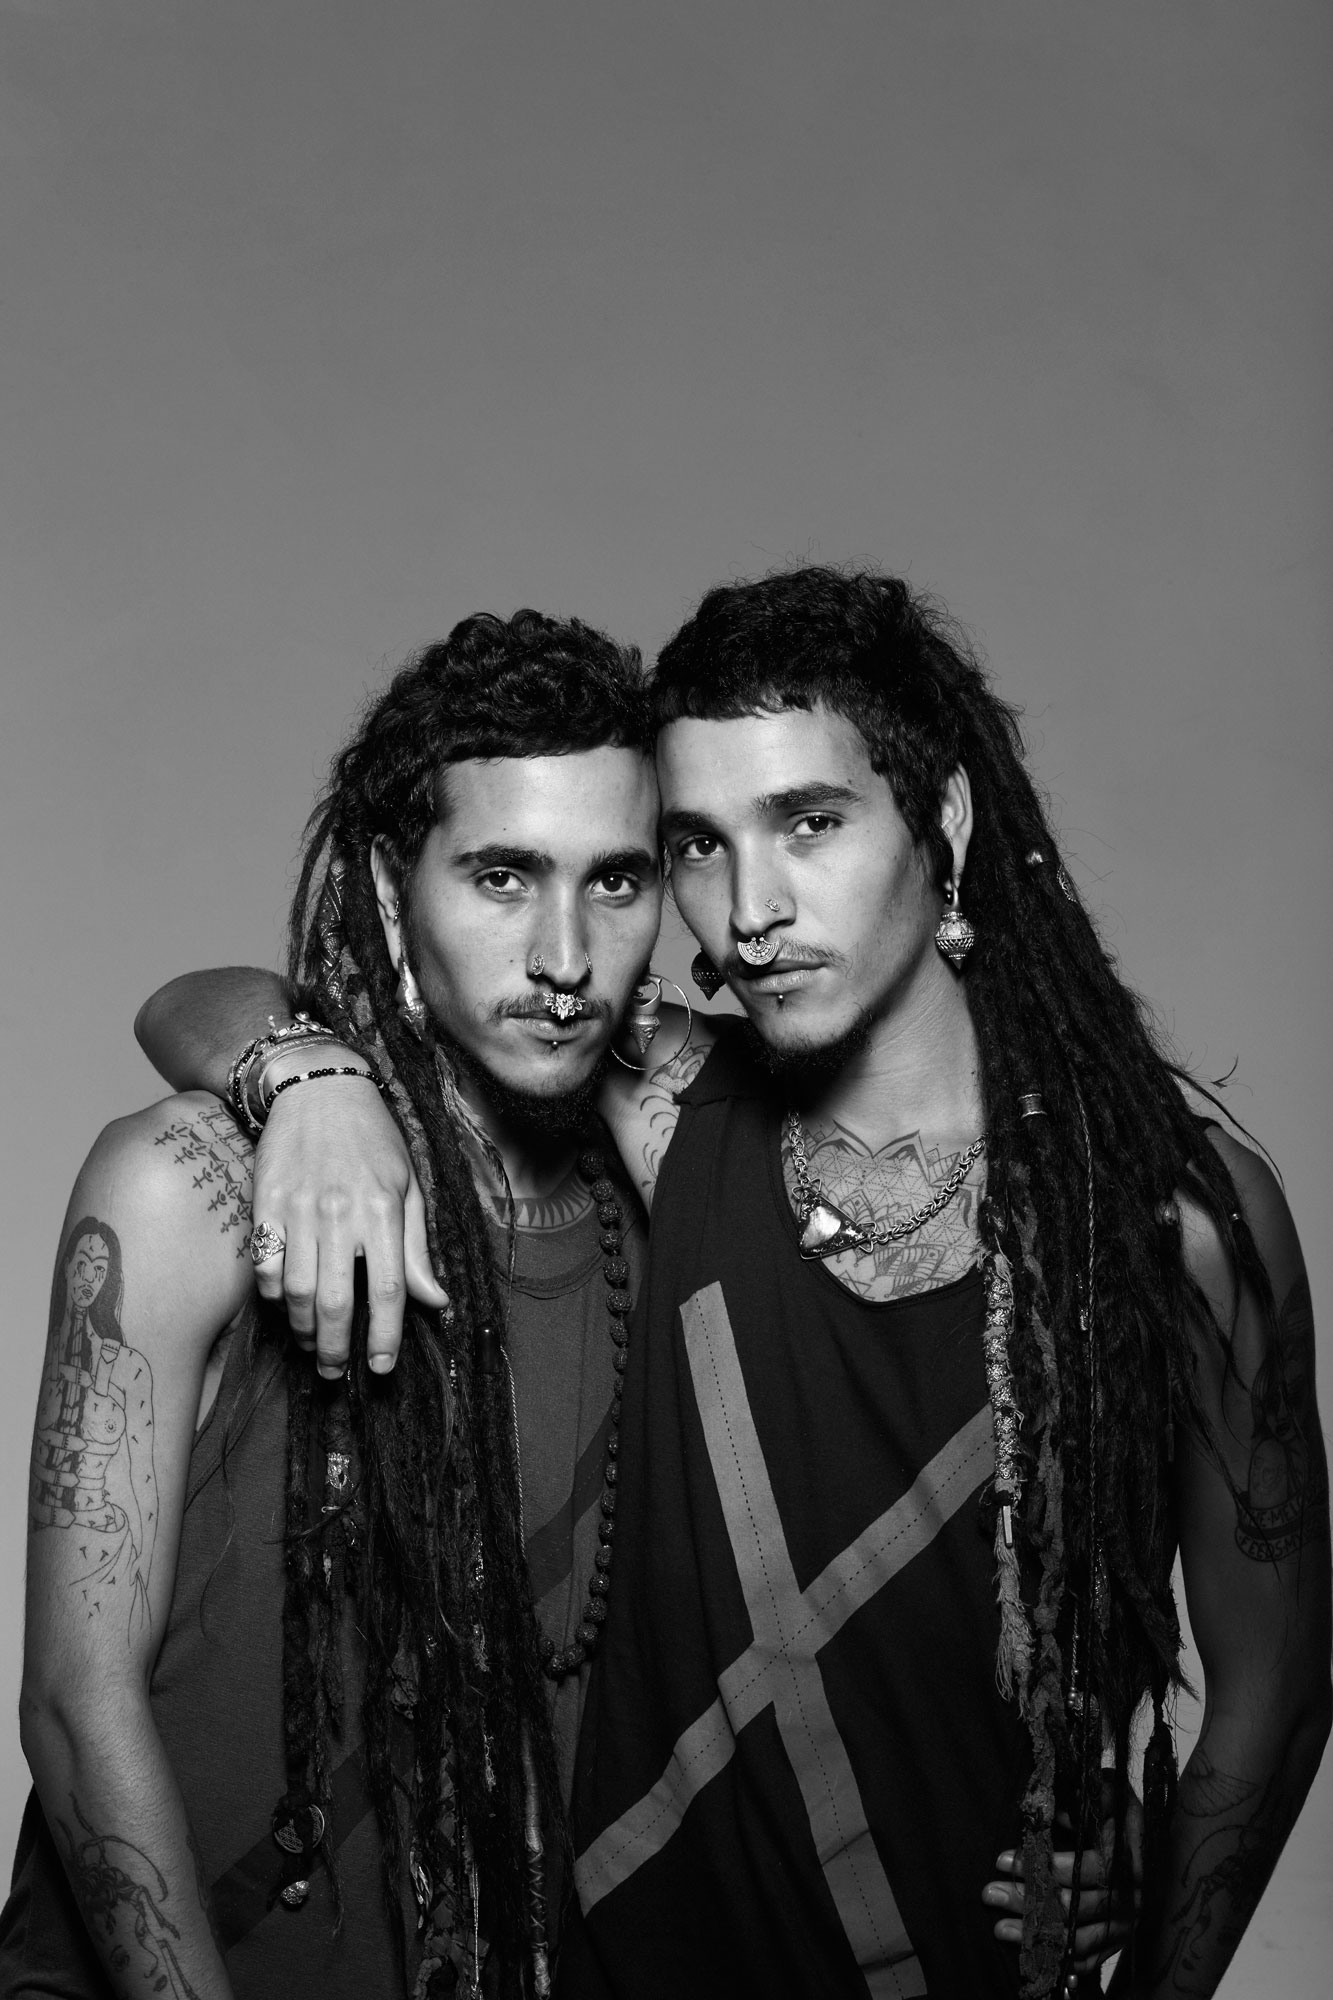 João e Paulo Ricardo, modelos da brasileira Squad